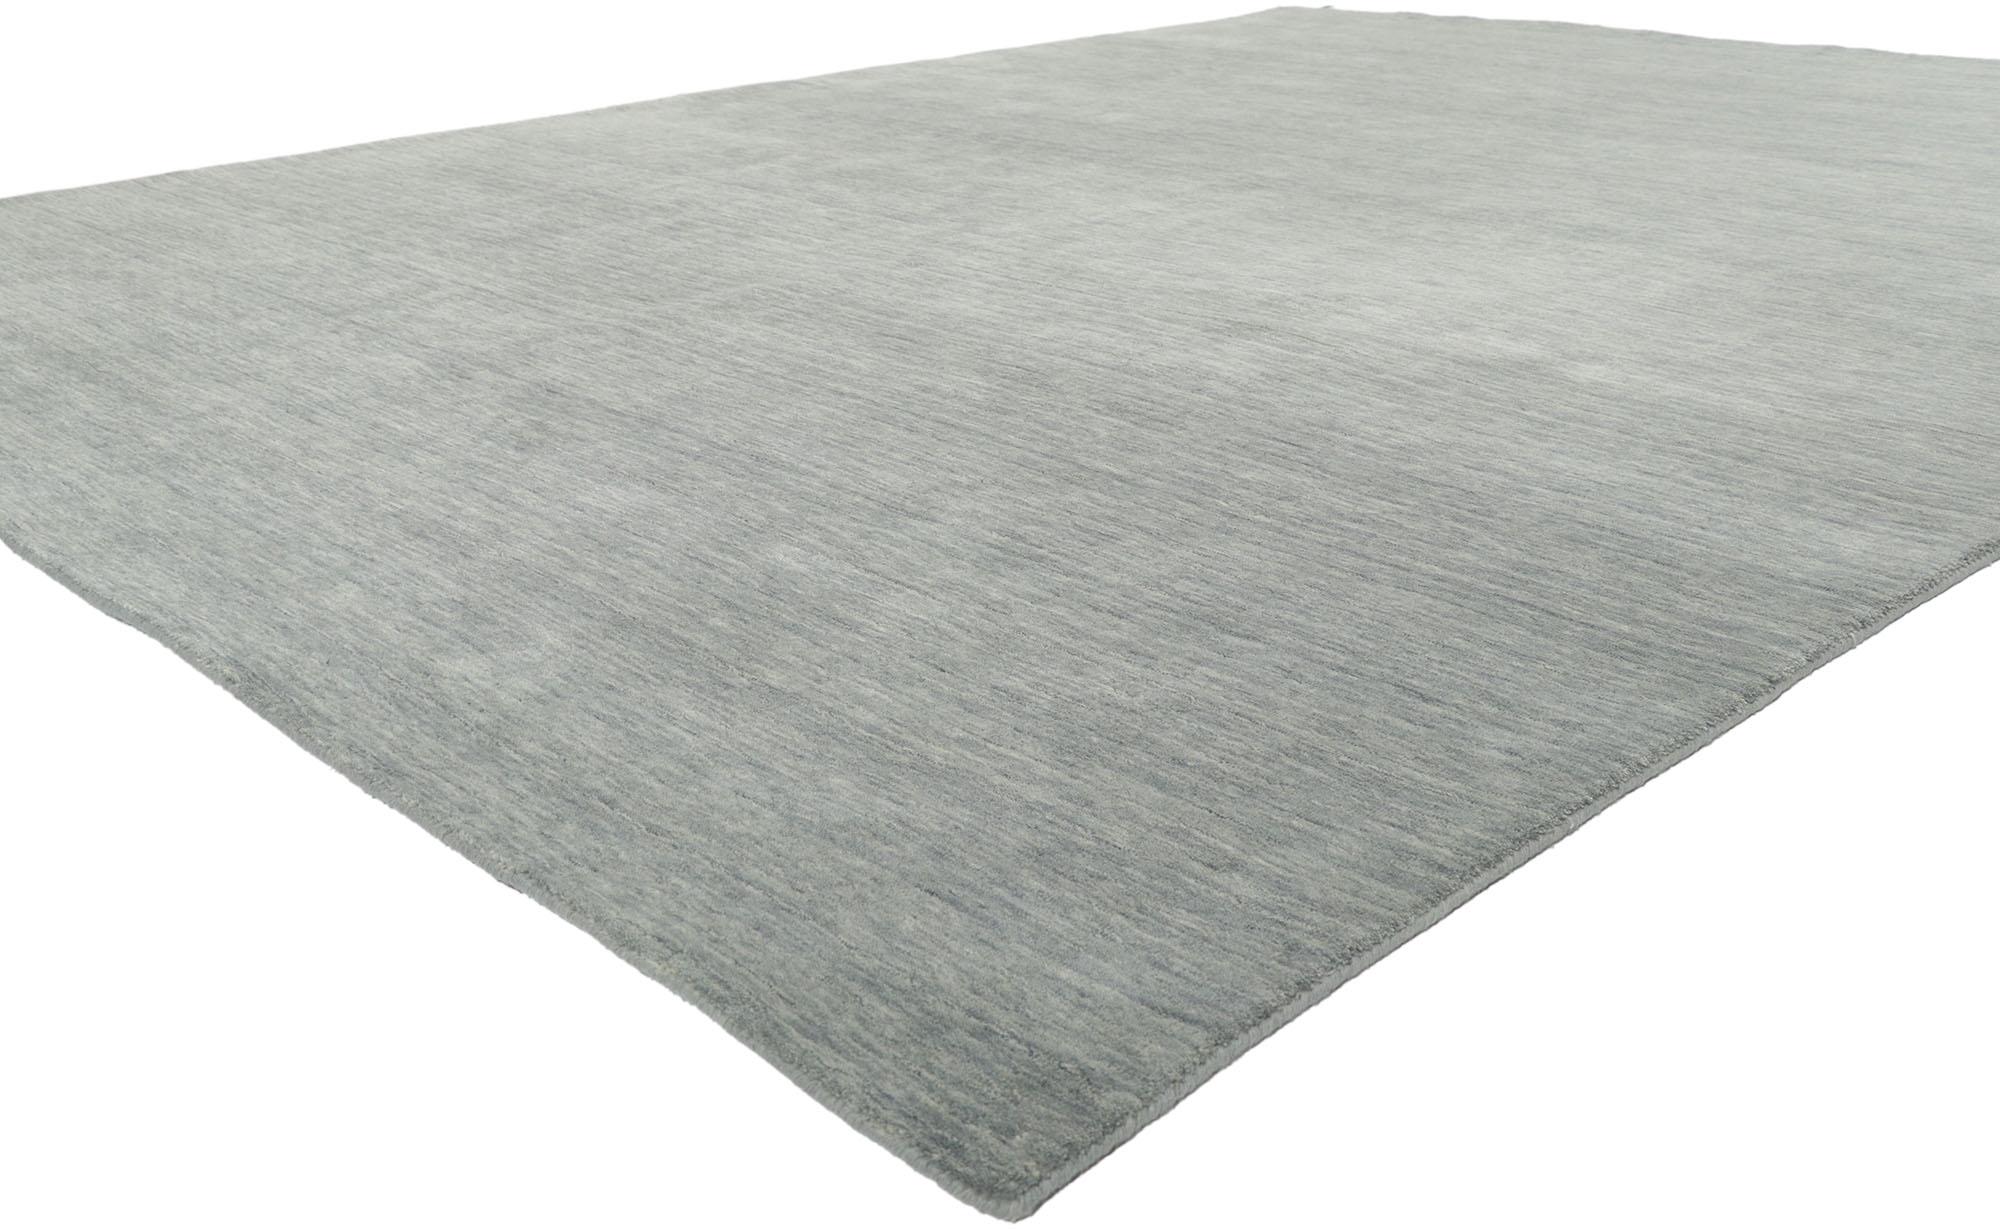 30745 Nouveau tapis gris contemporain de style moderne 08'11 x 12'00. D'une beauté sans effort, combinée à la simplicité et au style moderne, ce tapis indien contemporain en laine tissée à la main procure une sensation de confort douillet sans